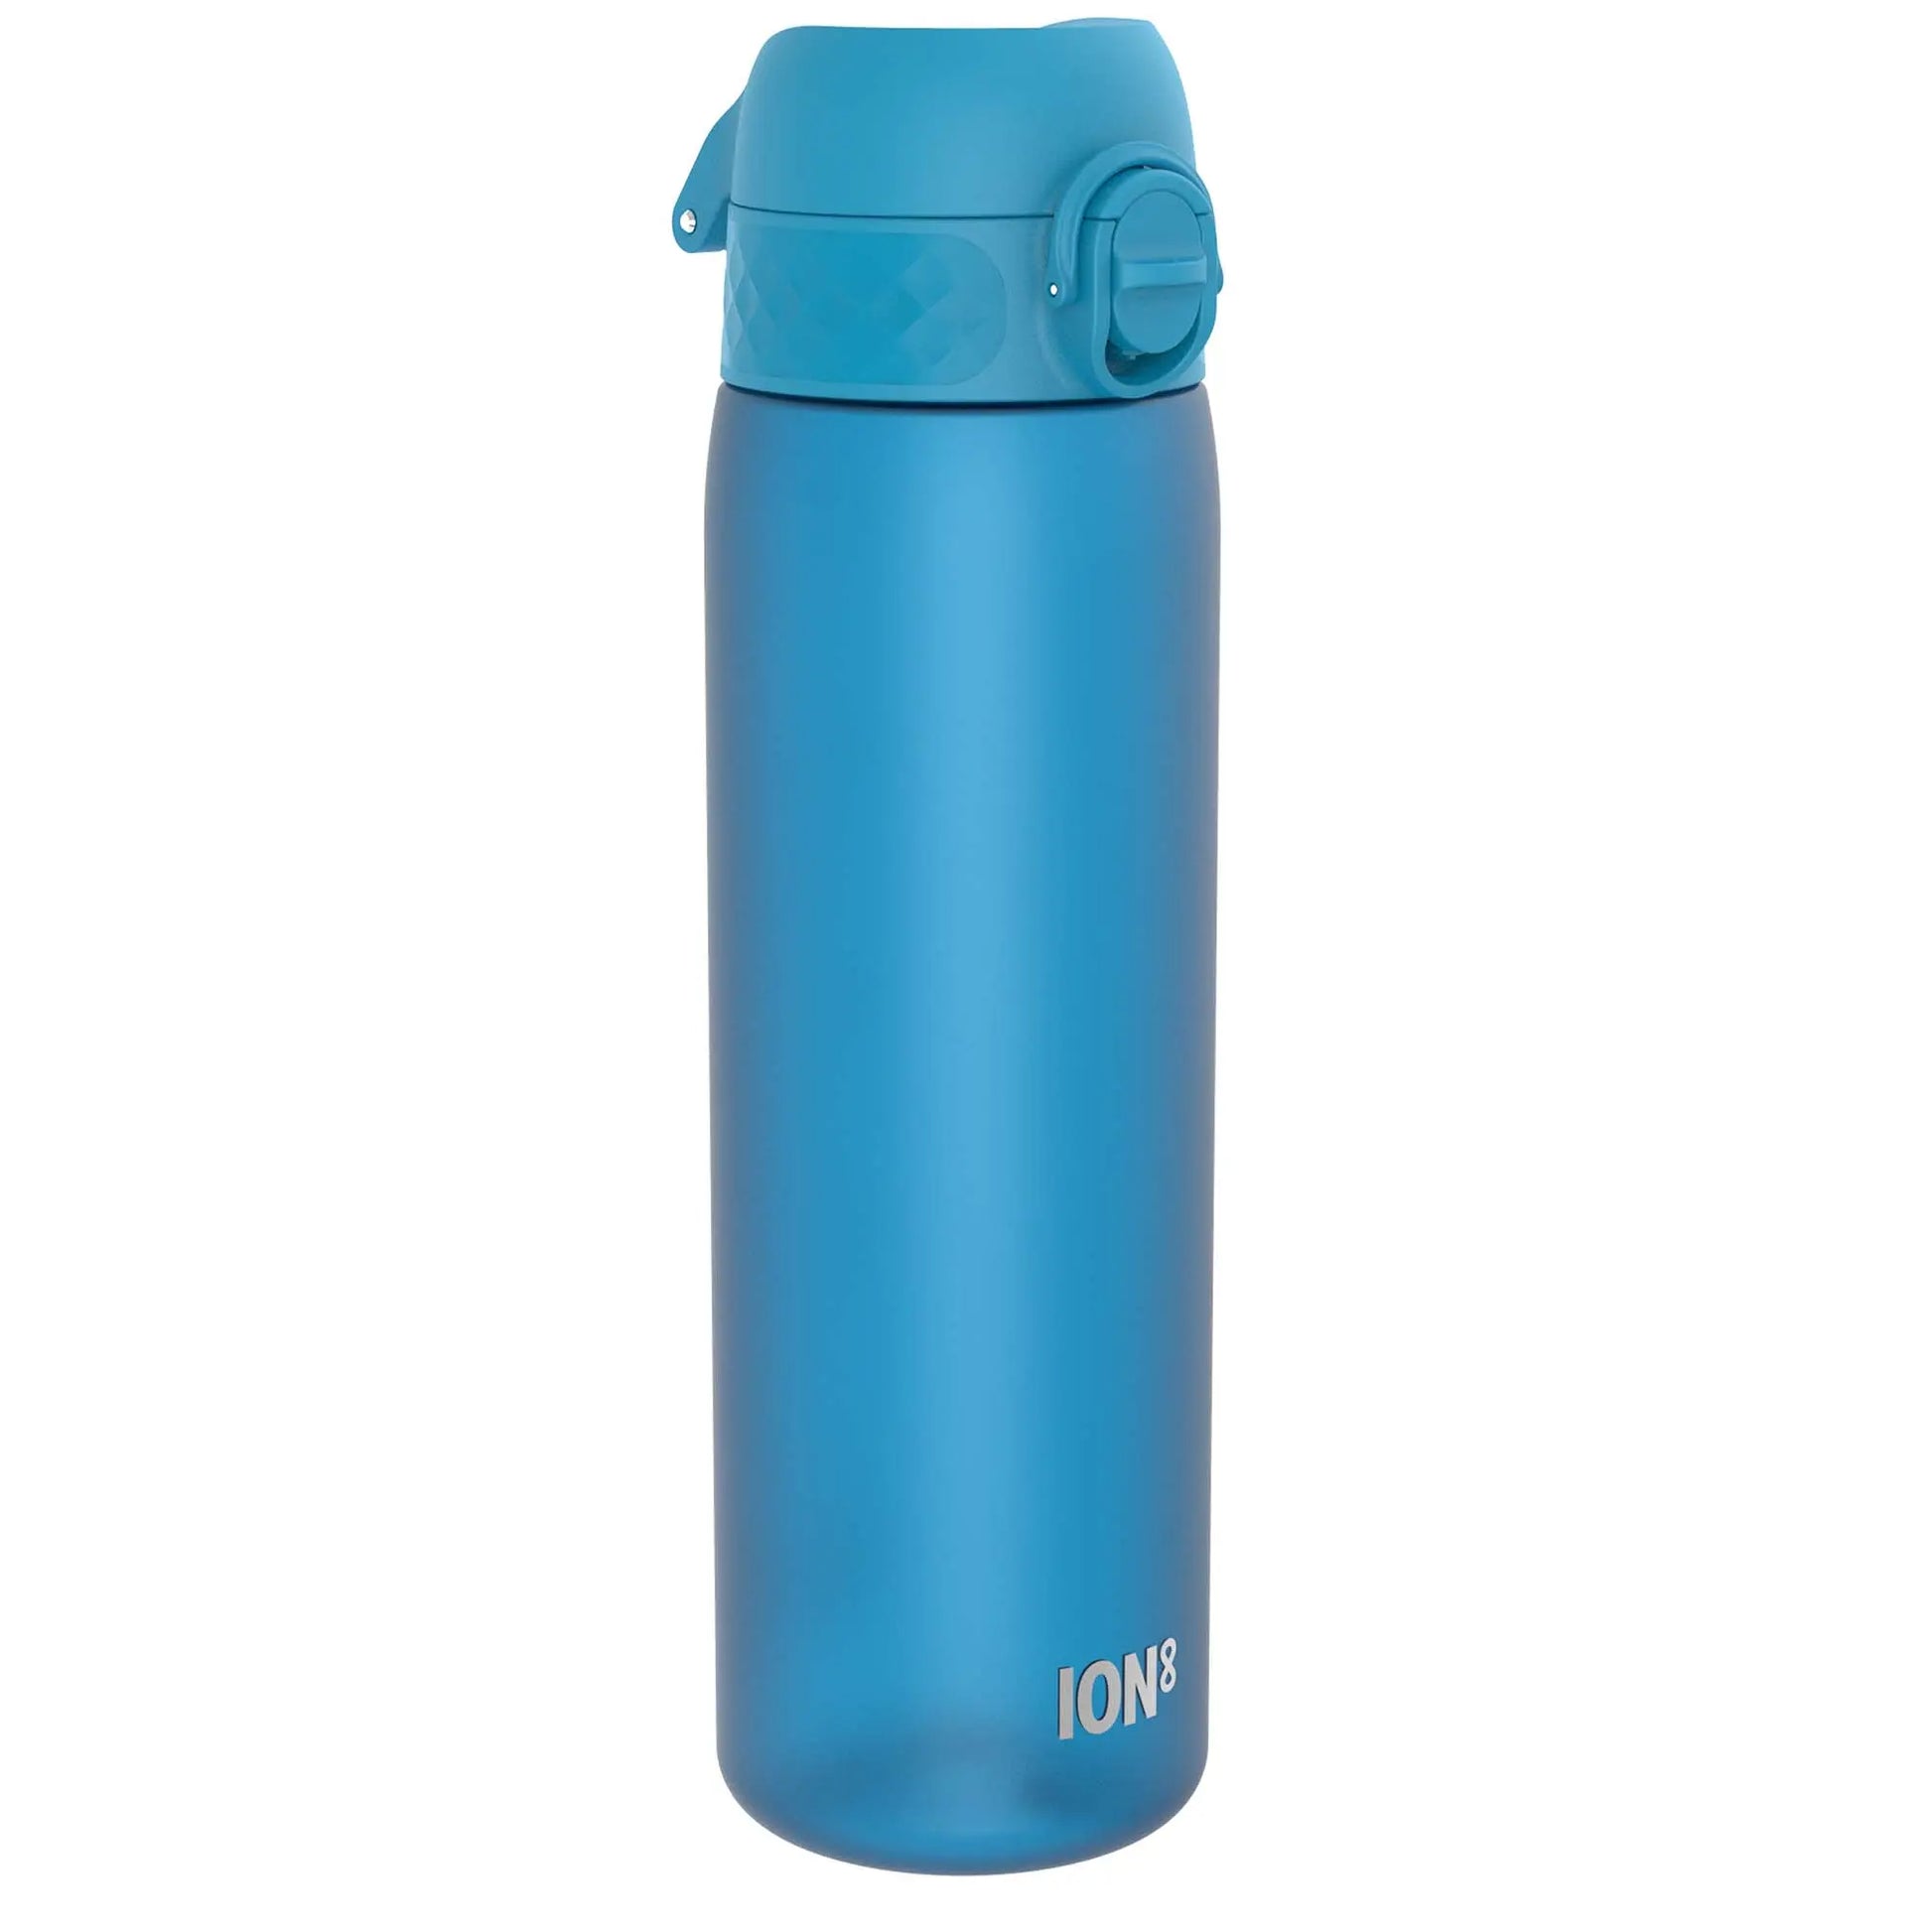 Leak Proof Slim Water Bottle, Recyclon™, Blue, 500ml (18oz) Ion8